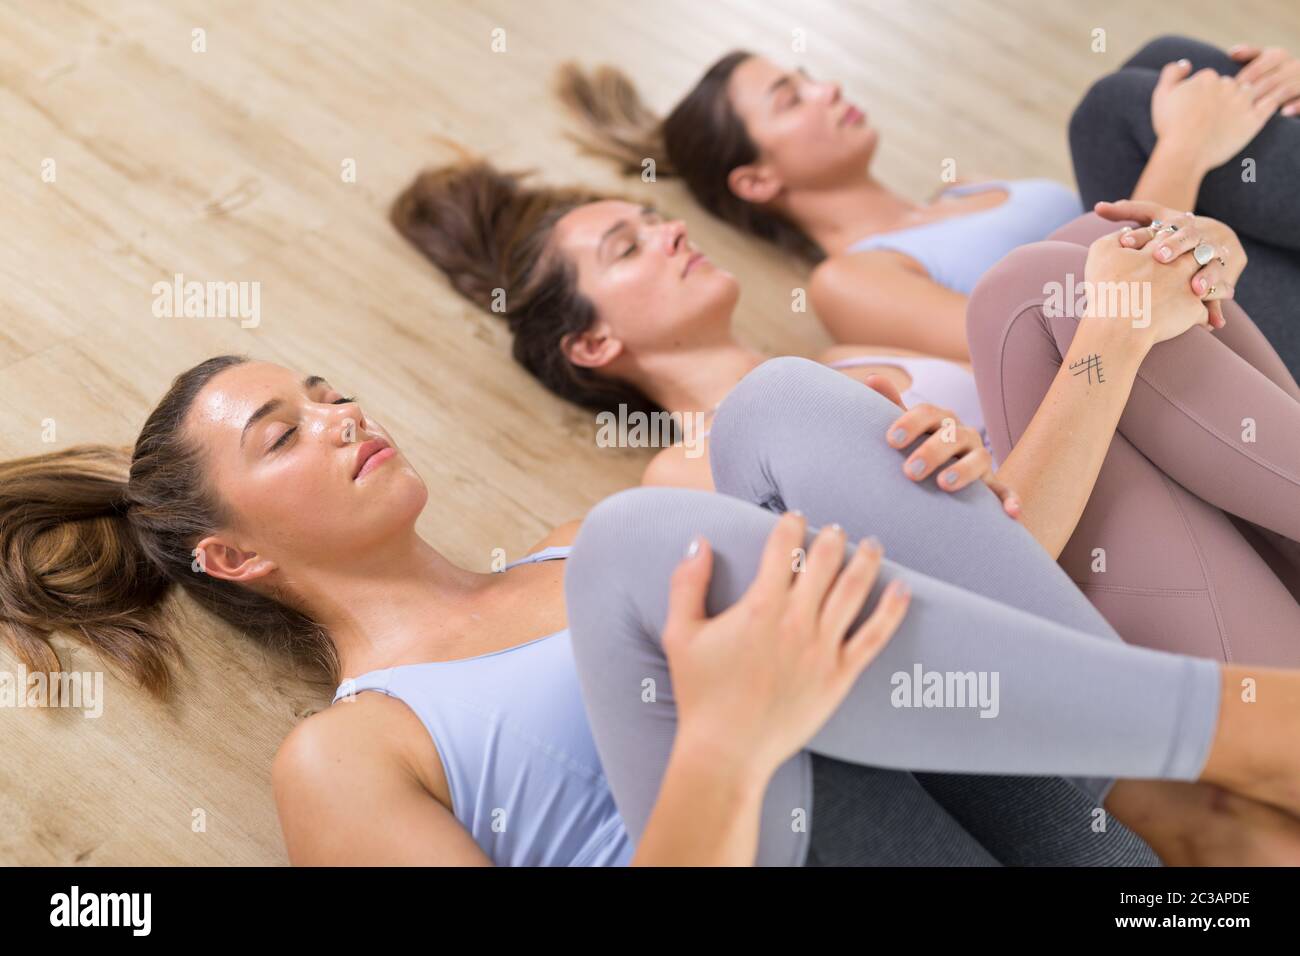 Gruppe von drei jungen sportlich attraktiven Frauen im Yoga-Studio, auf dem Boden liegend, dehnend und entspannend nach dem Training. Gesunde, aktive Lebensweise, Stockfoto